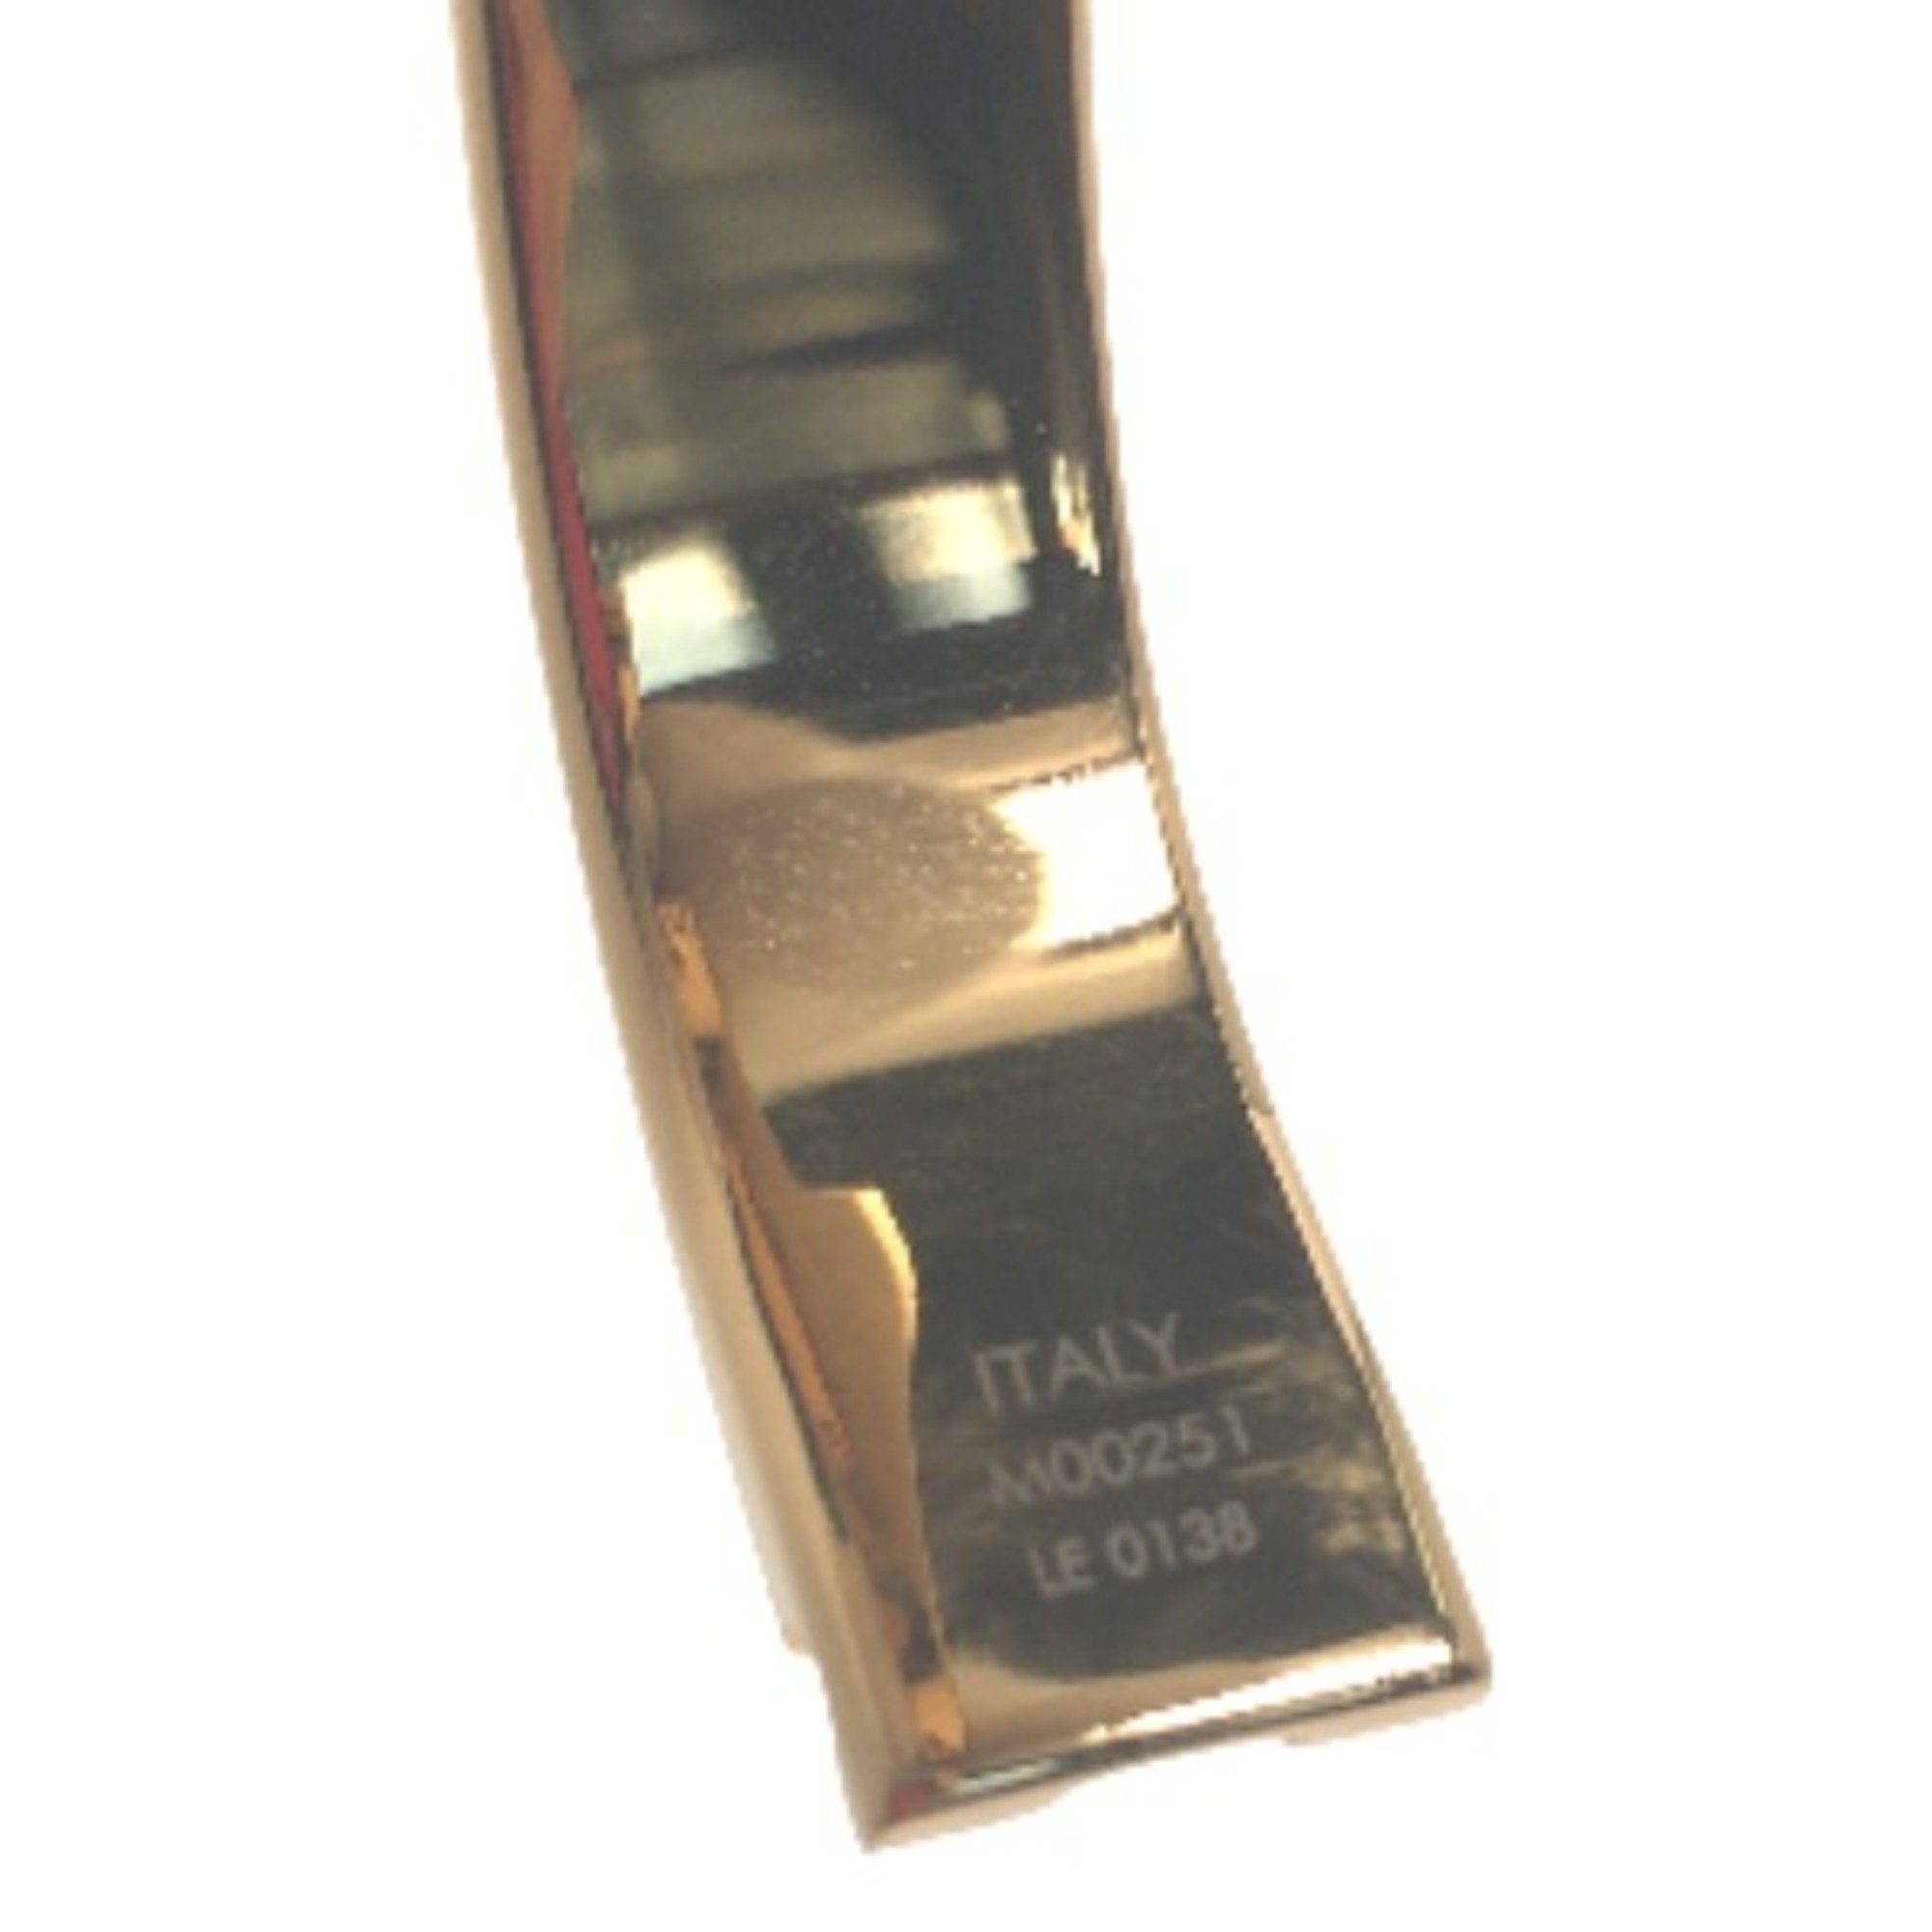 LOUIS VUITTON Cuff Nanogram Monogram S Size M00251 Louis Vuitton Gold Bracelet LV